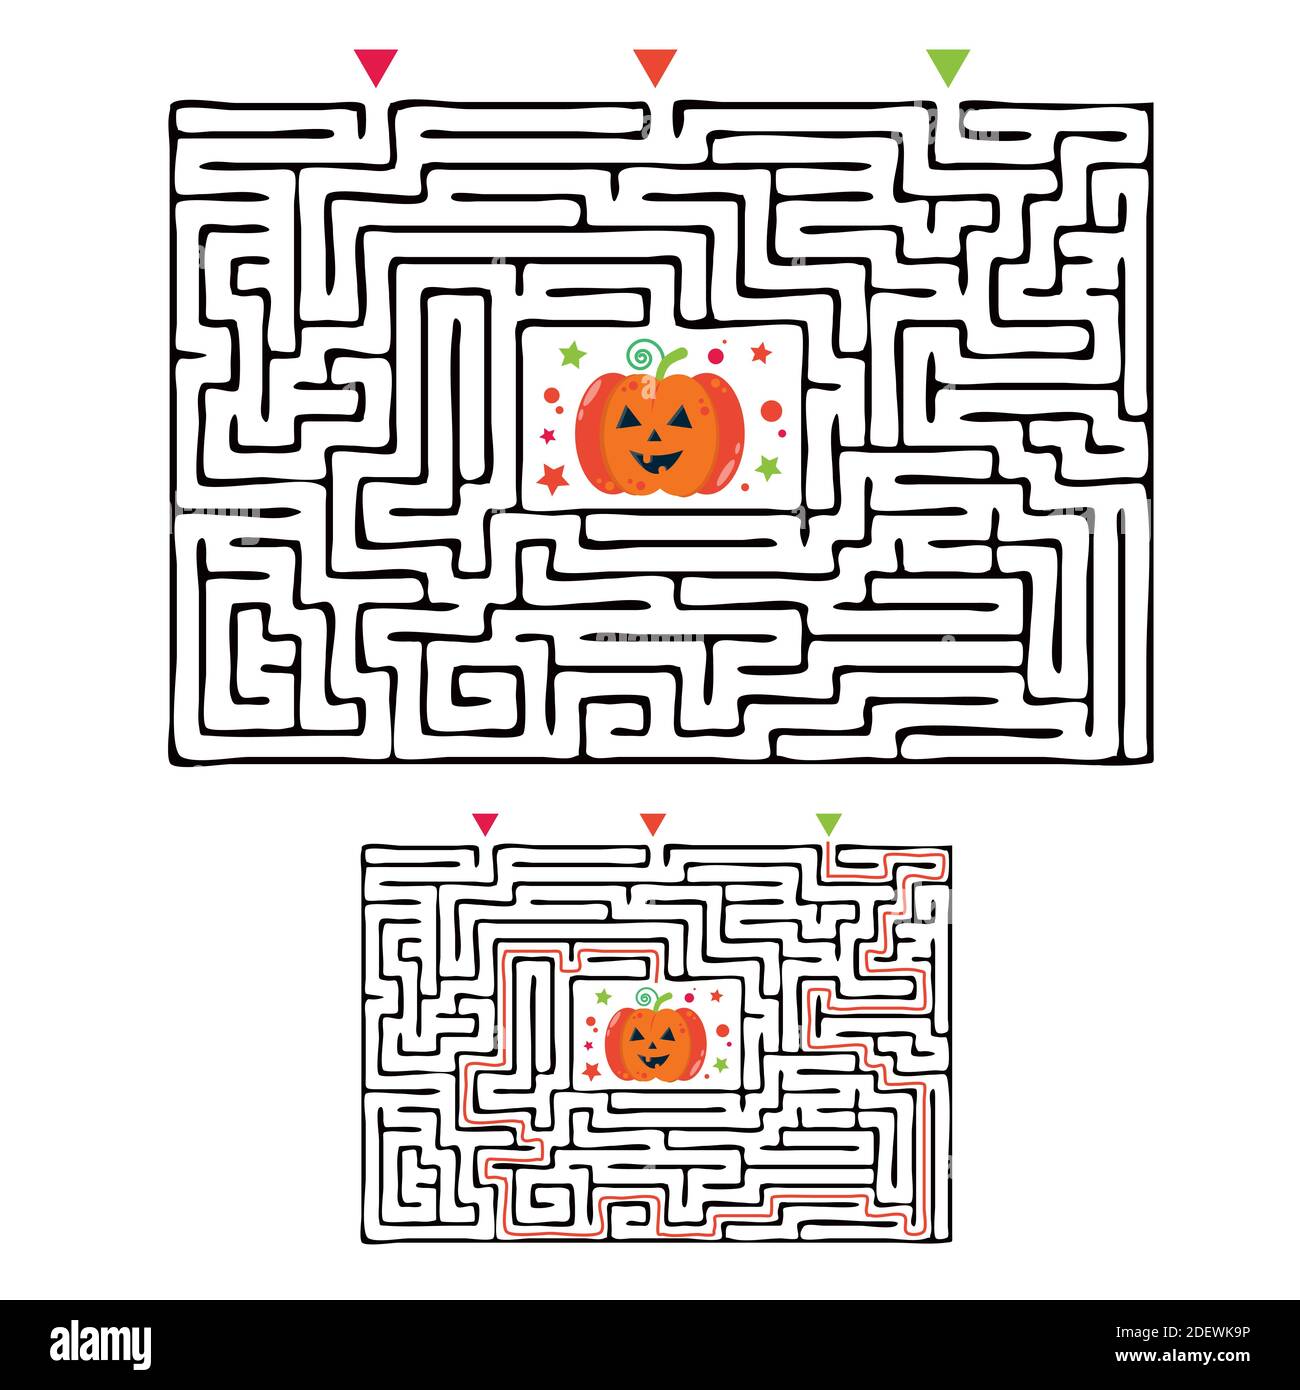 Labirinto rettangolare Halloween gioco labirinto per bambini. Logica labirintica. Tre ingressi e una strada a destra per andare. Immagine piatta vettoriale Illustrazione Vettoriale